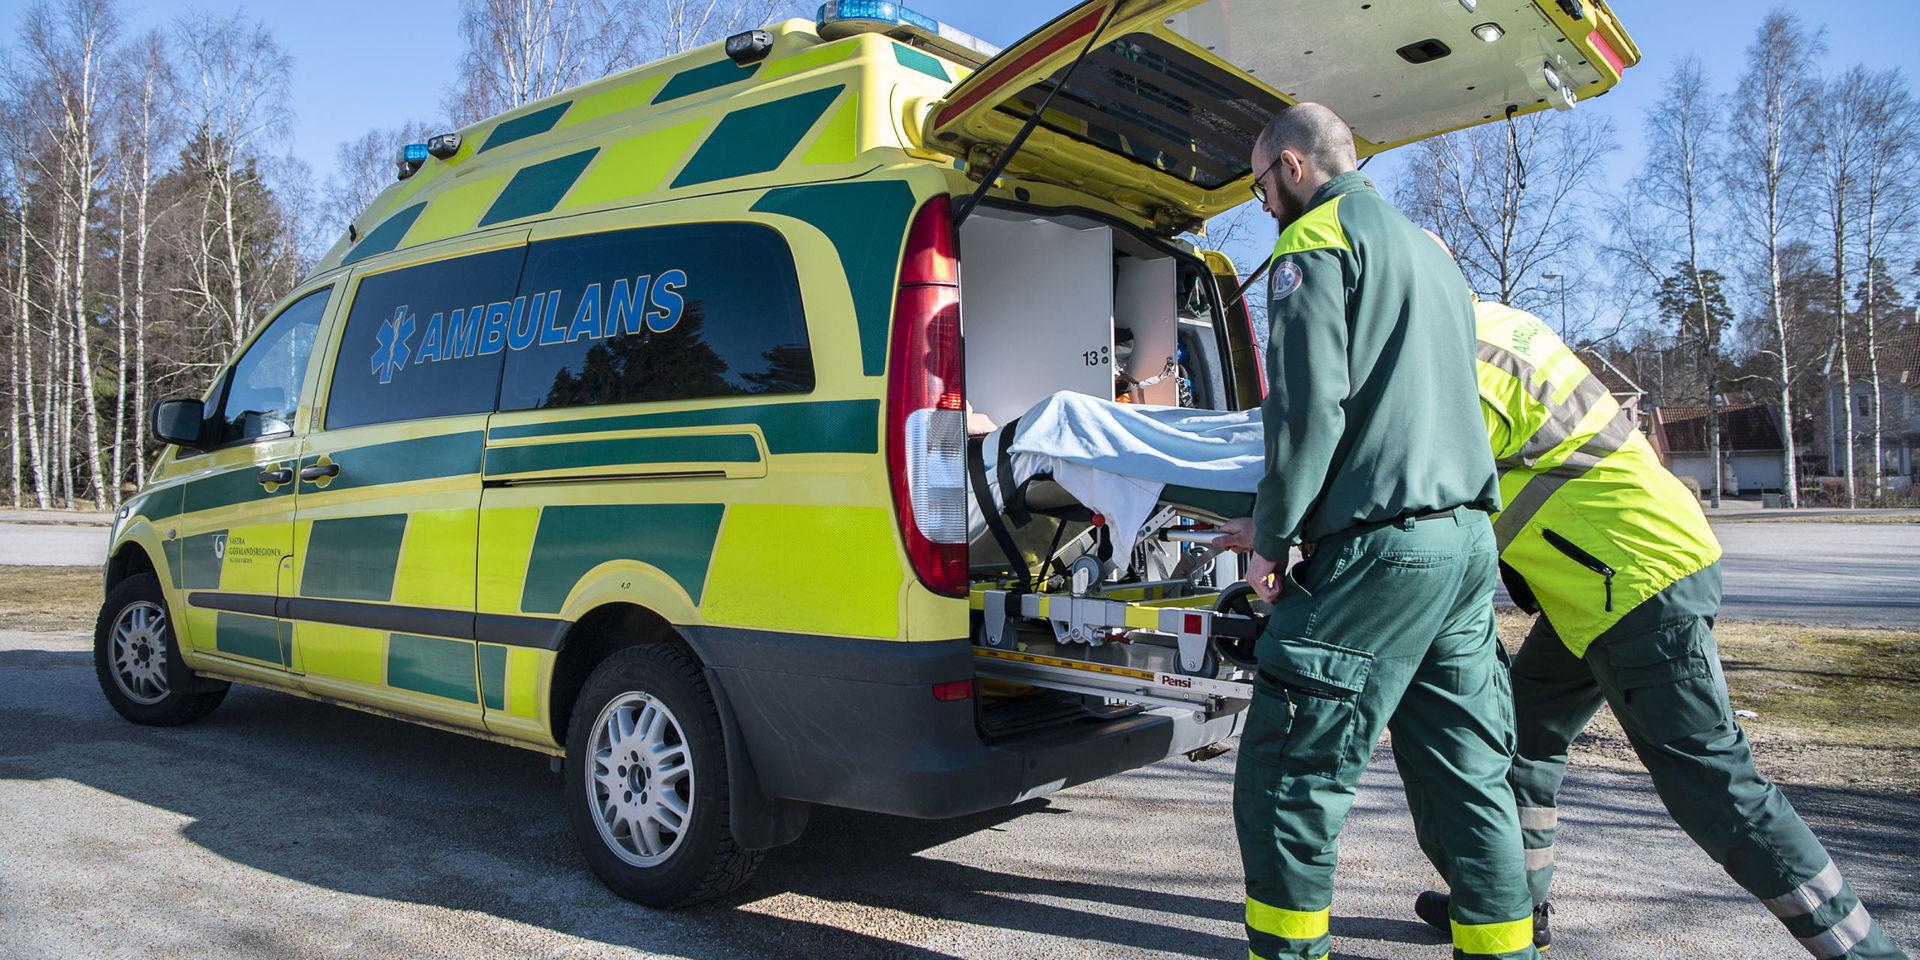 Även det reviderade förslaget till neddragningar i ambulansverksamheten sannolikt kommer att innebära direkt fara för liv om de genomförs, menar Heikki Klaavuniemi.